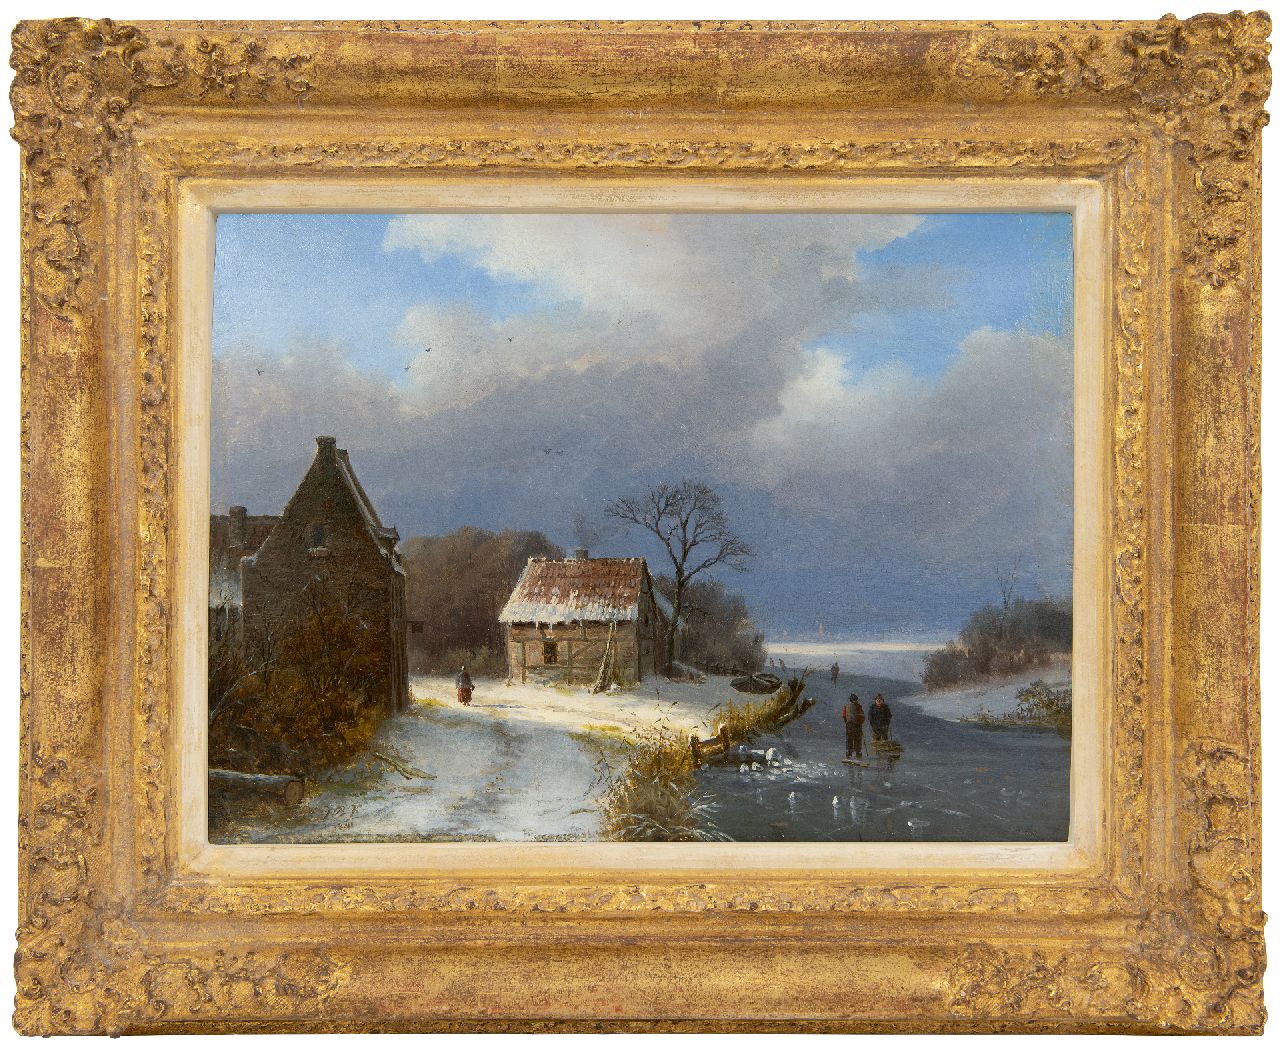 Klombeck J.B.  | Johann Bernard Klombeck | Schilderijen te koop aangeboden | Winters landschap met schaatsers en houtsprokkelaar, olieverf op paneel 22,9 x 31,3 cm, gesigneerd linksonder met initialen en gedateerd 1841